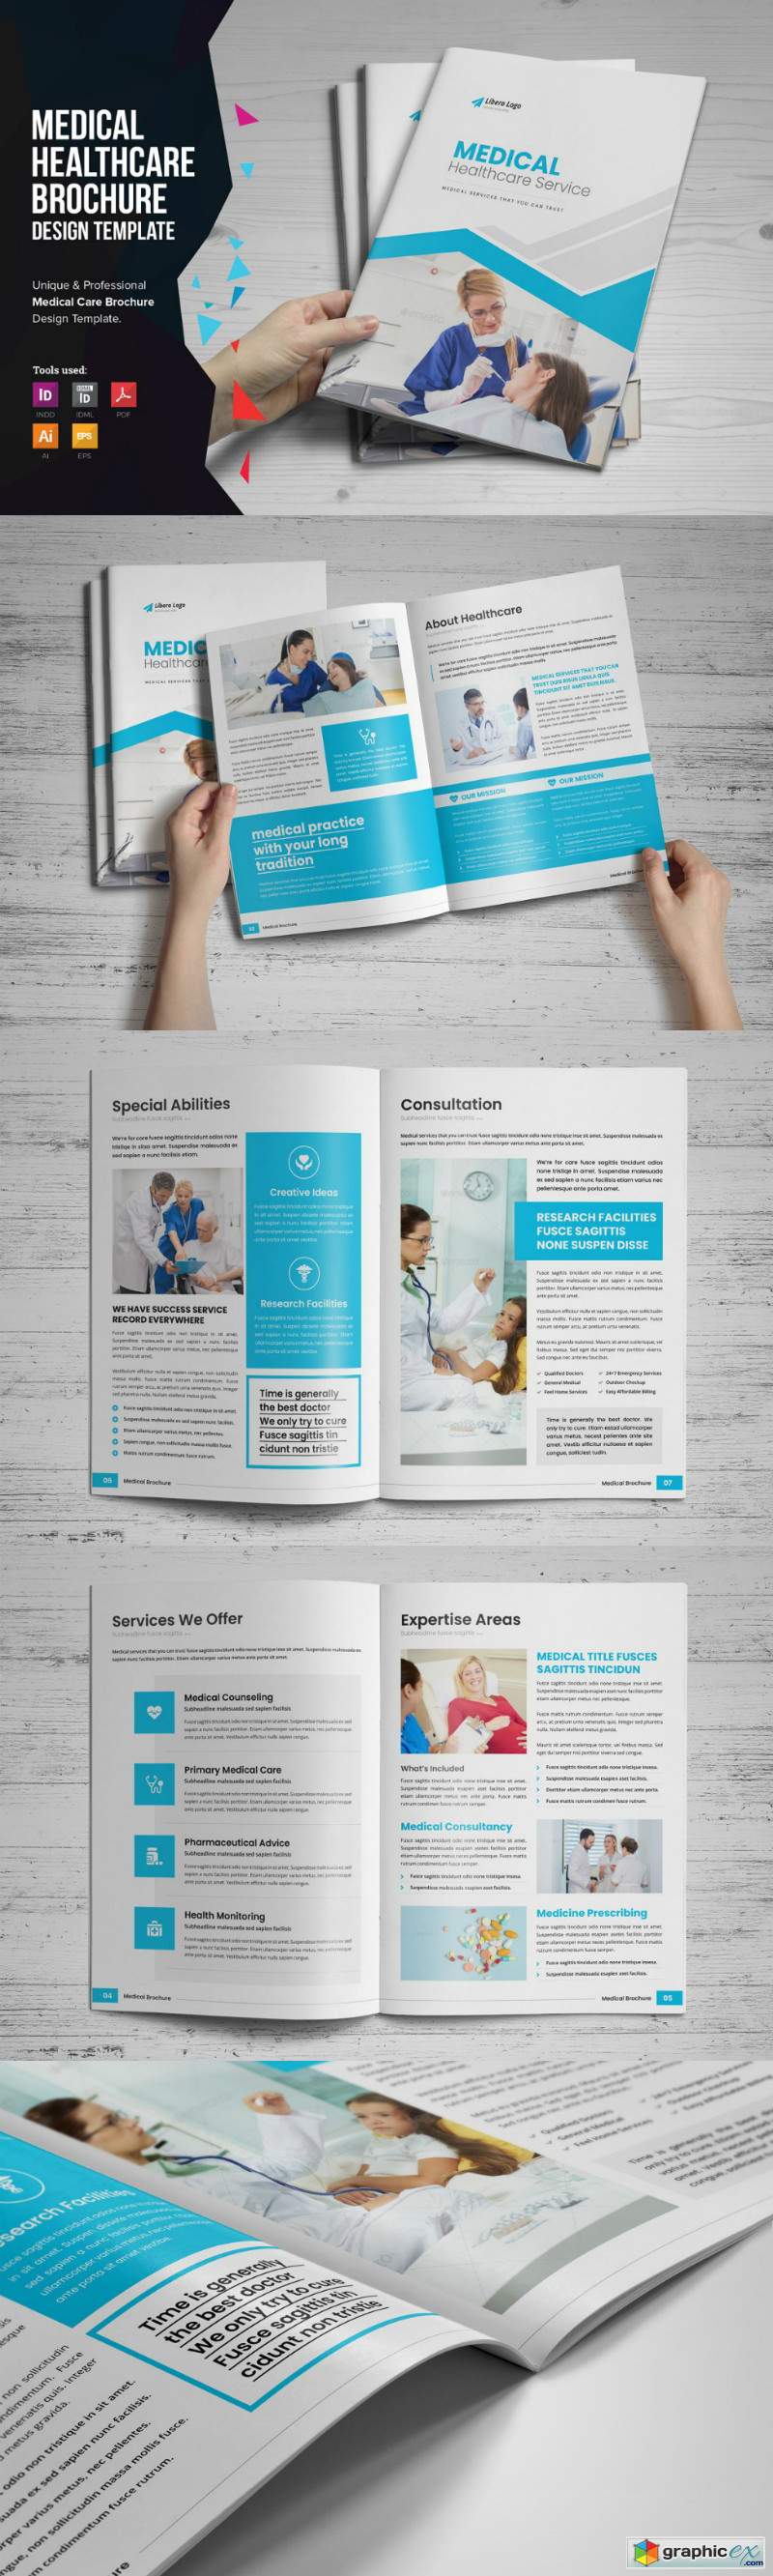 Medical HealthCare Brochure v6